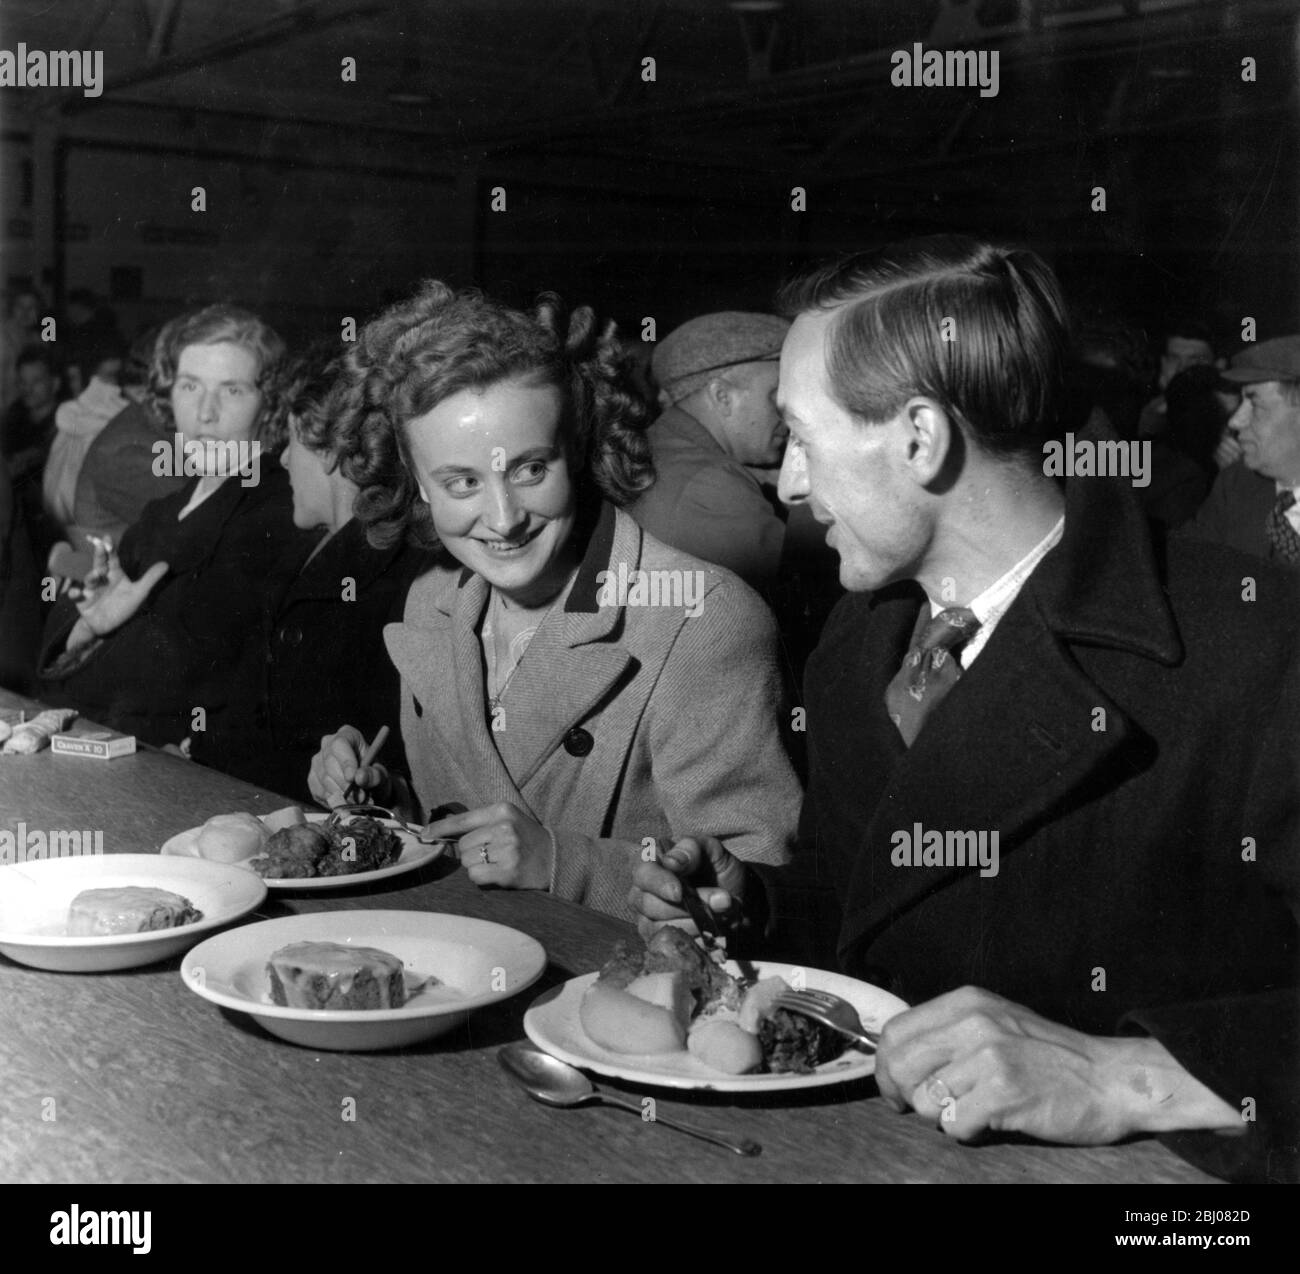 Sylvia Barker et Roland Jackson mangeant à la cantine de l'usine automobile pour laquelle ils travaillent. Ils paient un shilling par repas et depuis leur première réunion dans la cantine ils sont maintenant engagés à être mariés. - Birmingham, Angleterre - 9 juin 1949 - Banque D'Images